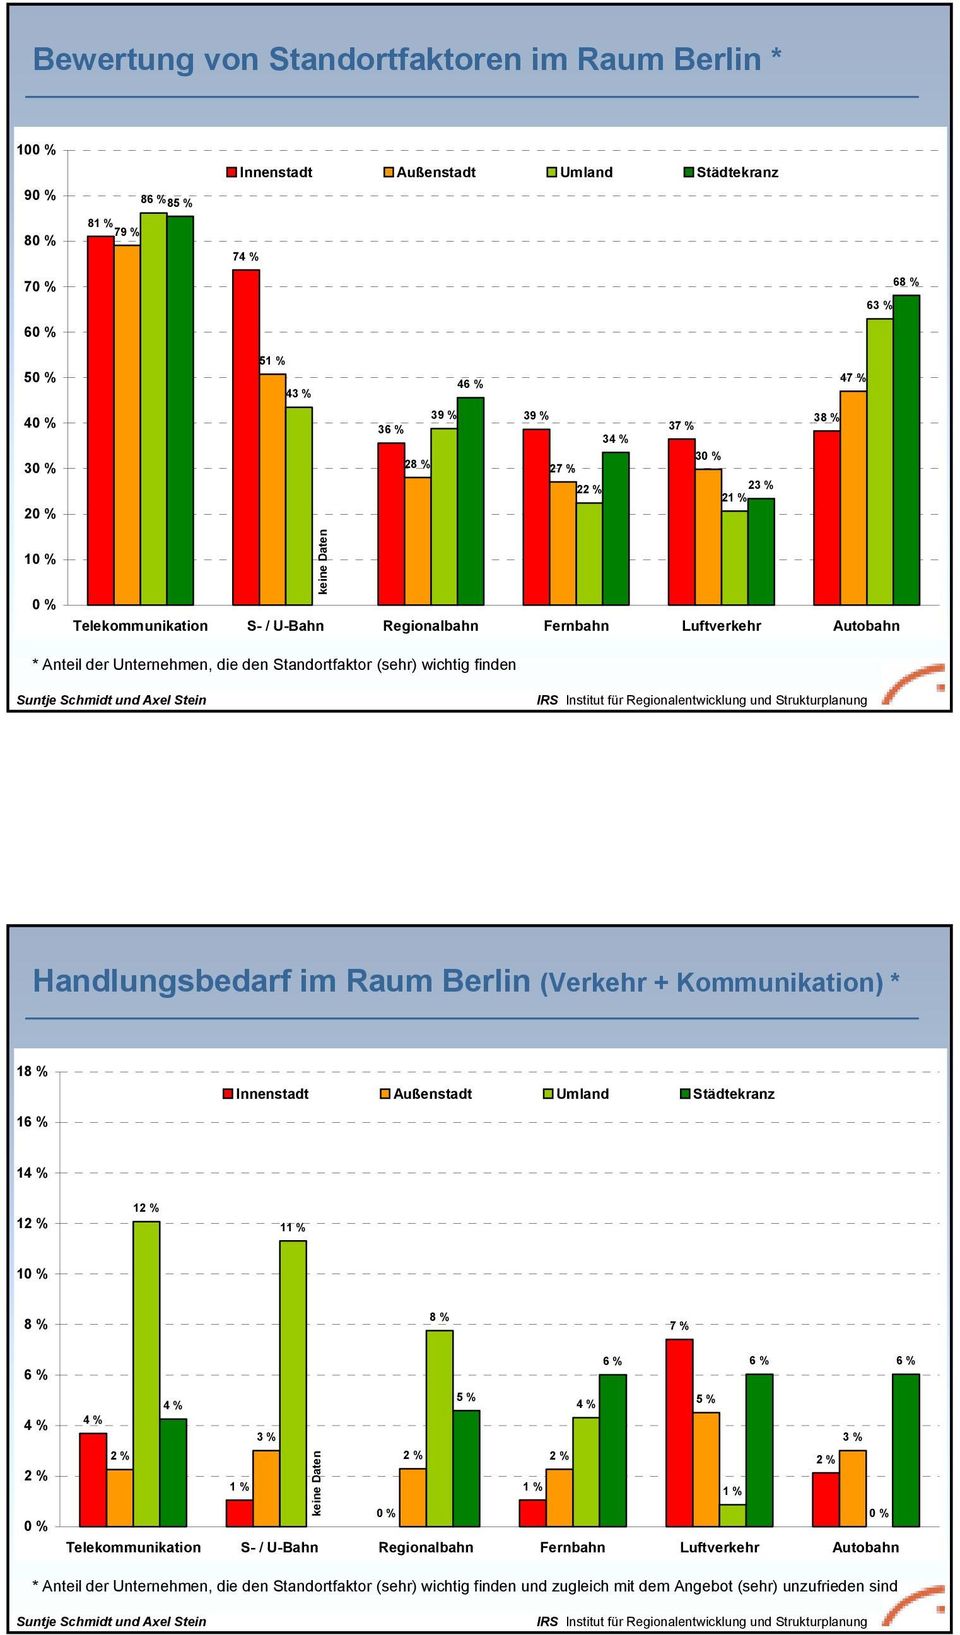 Handlungsbedarf im Raum Berlin (Verkehr + Kommunikation) * 1 1 Innenstadt Außenstadt Umland Städtekranz 1 1 1 11 % 1 7 % 3 % 1 % keine Daten 5 % 5 % 3 % 1 % 1 %